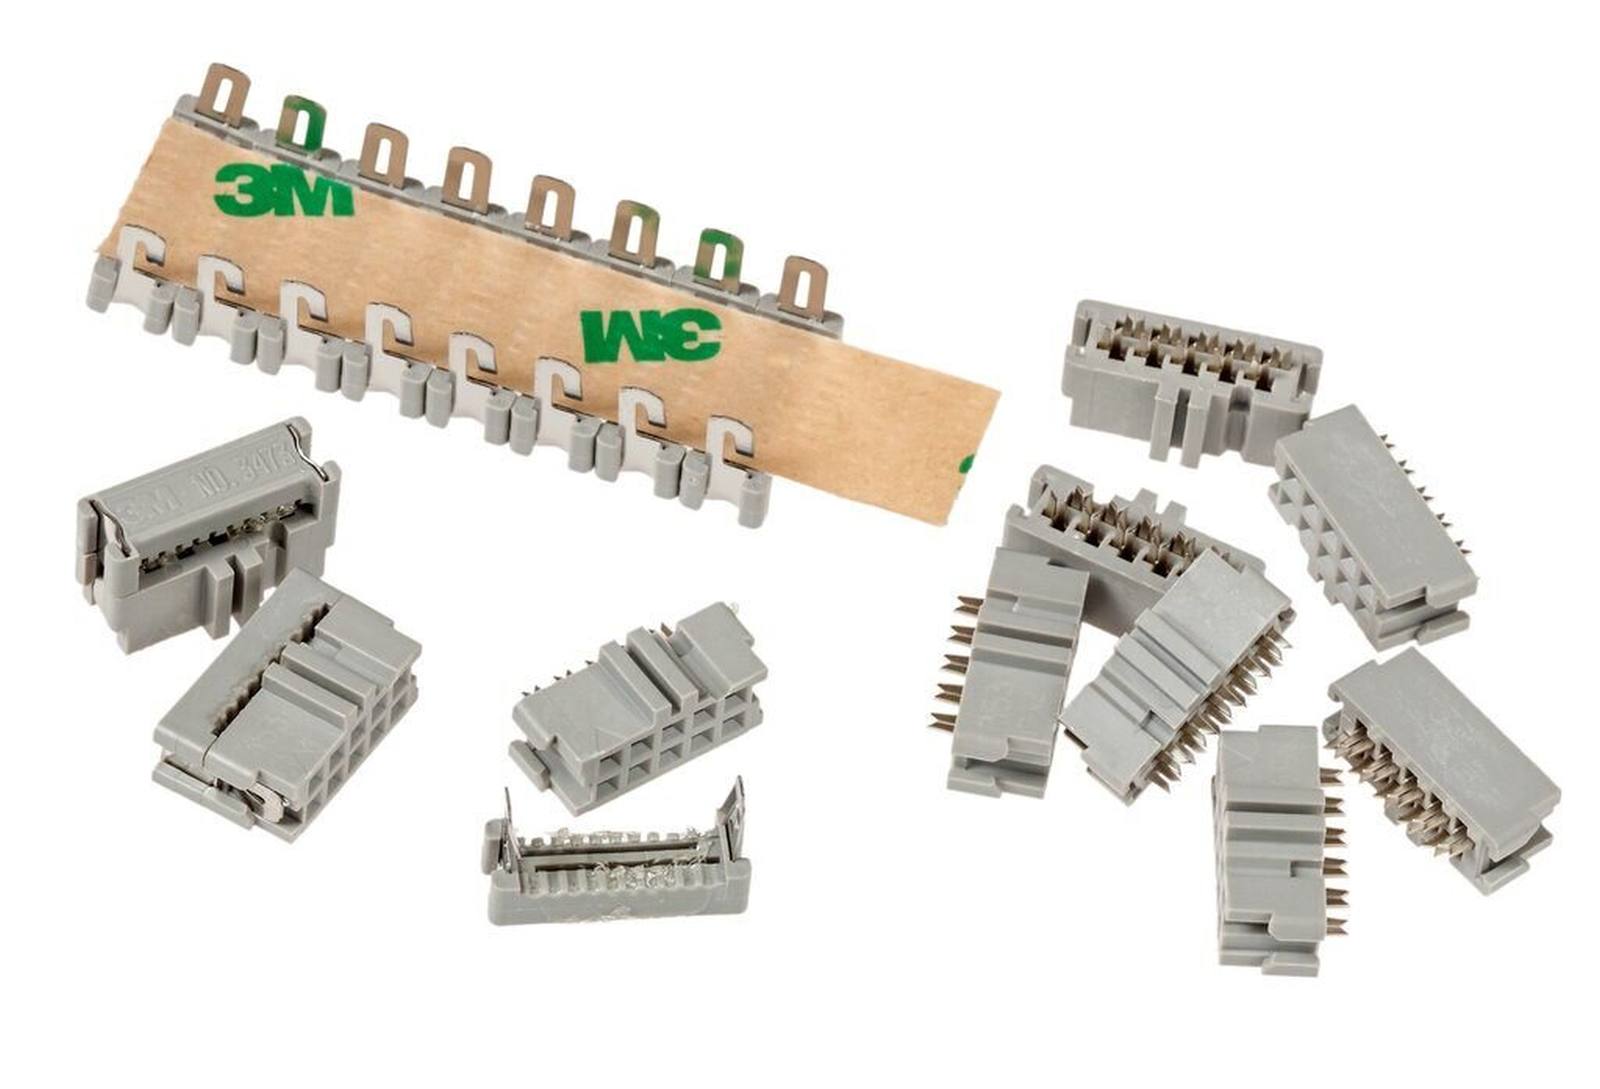 3M 3473-6600, conector hembra para montaje de cables, 10 patillas, serie 3000, 2,54 mm, 0,76 Âµm Au, gris